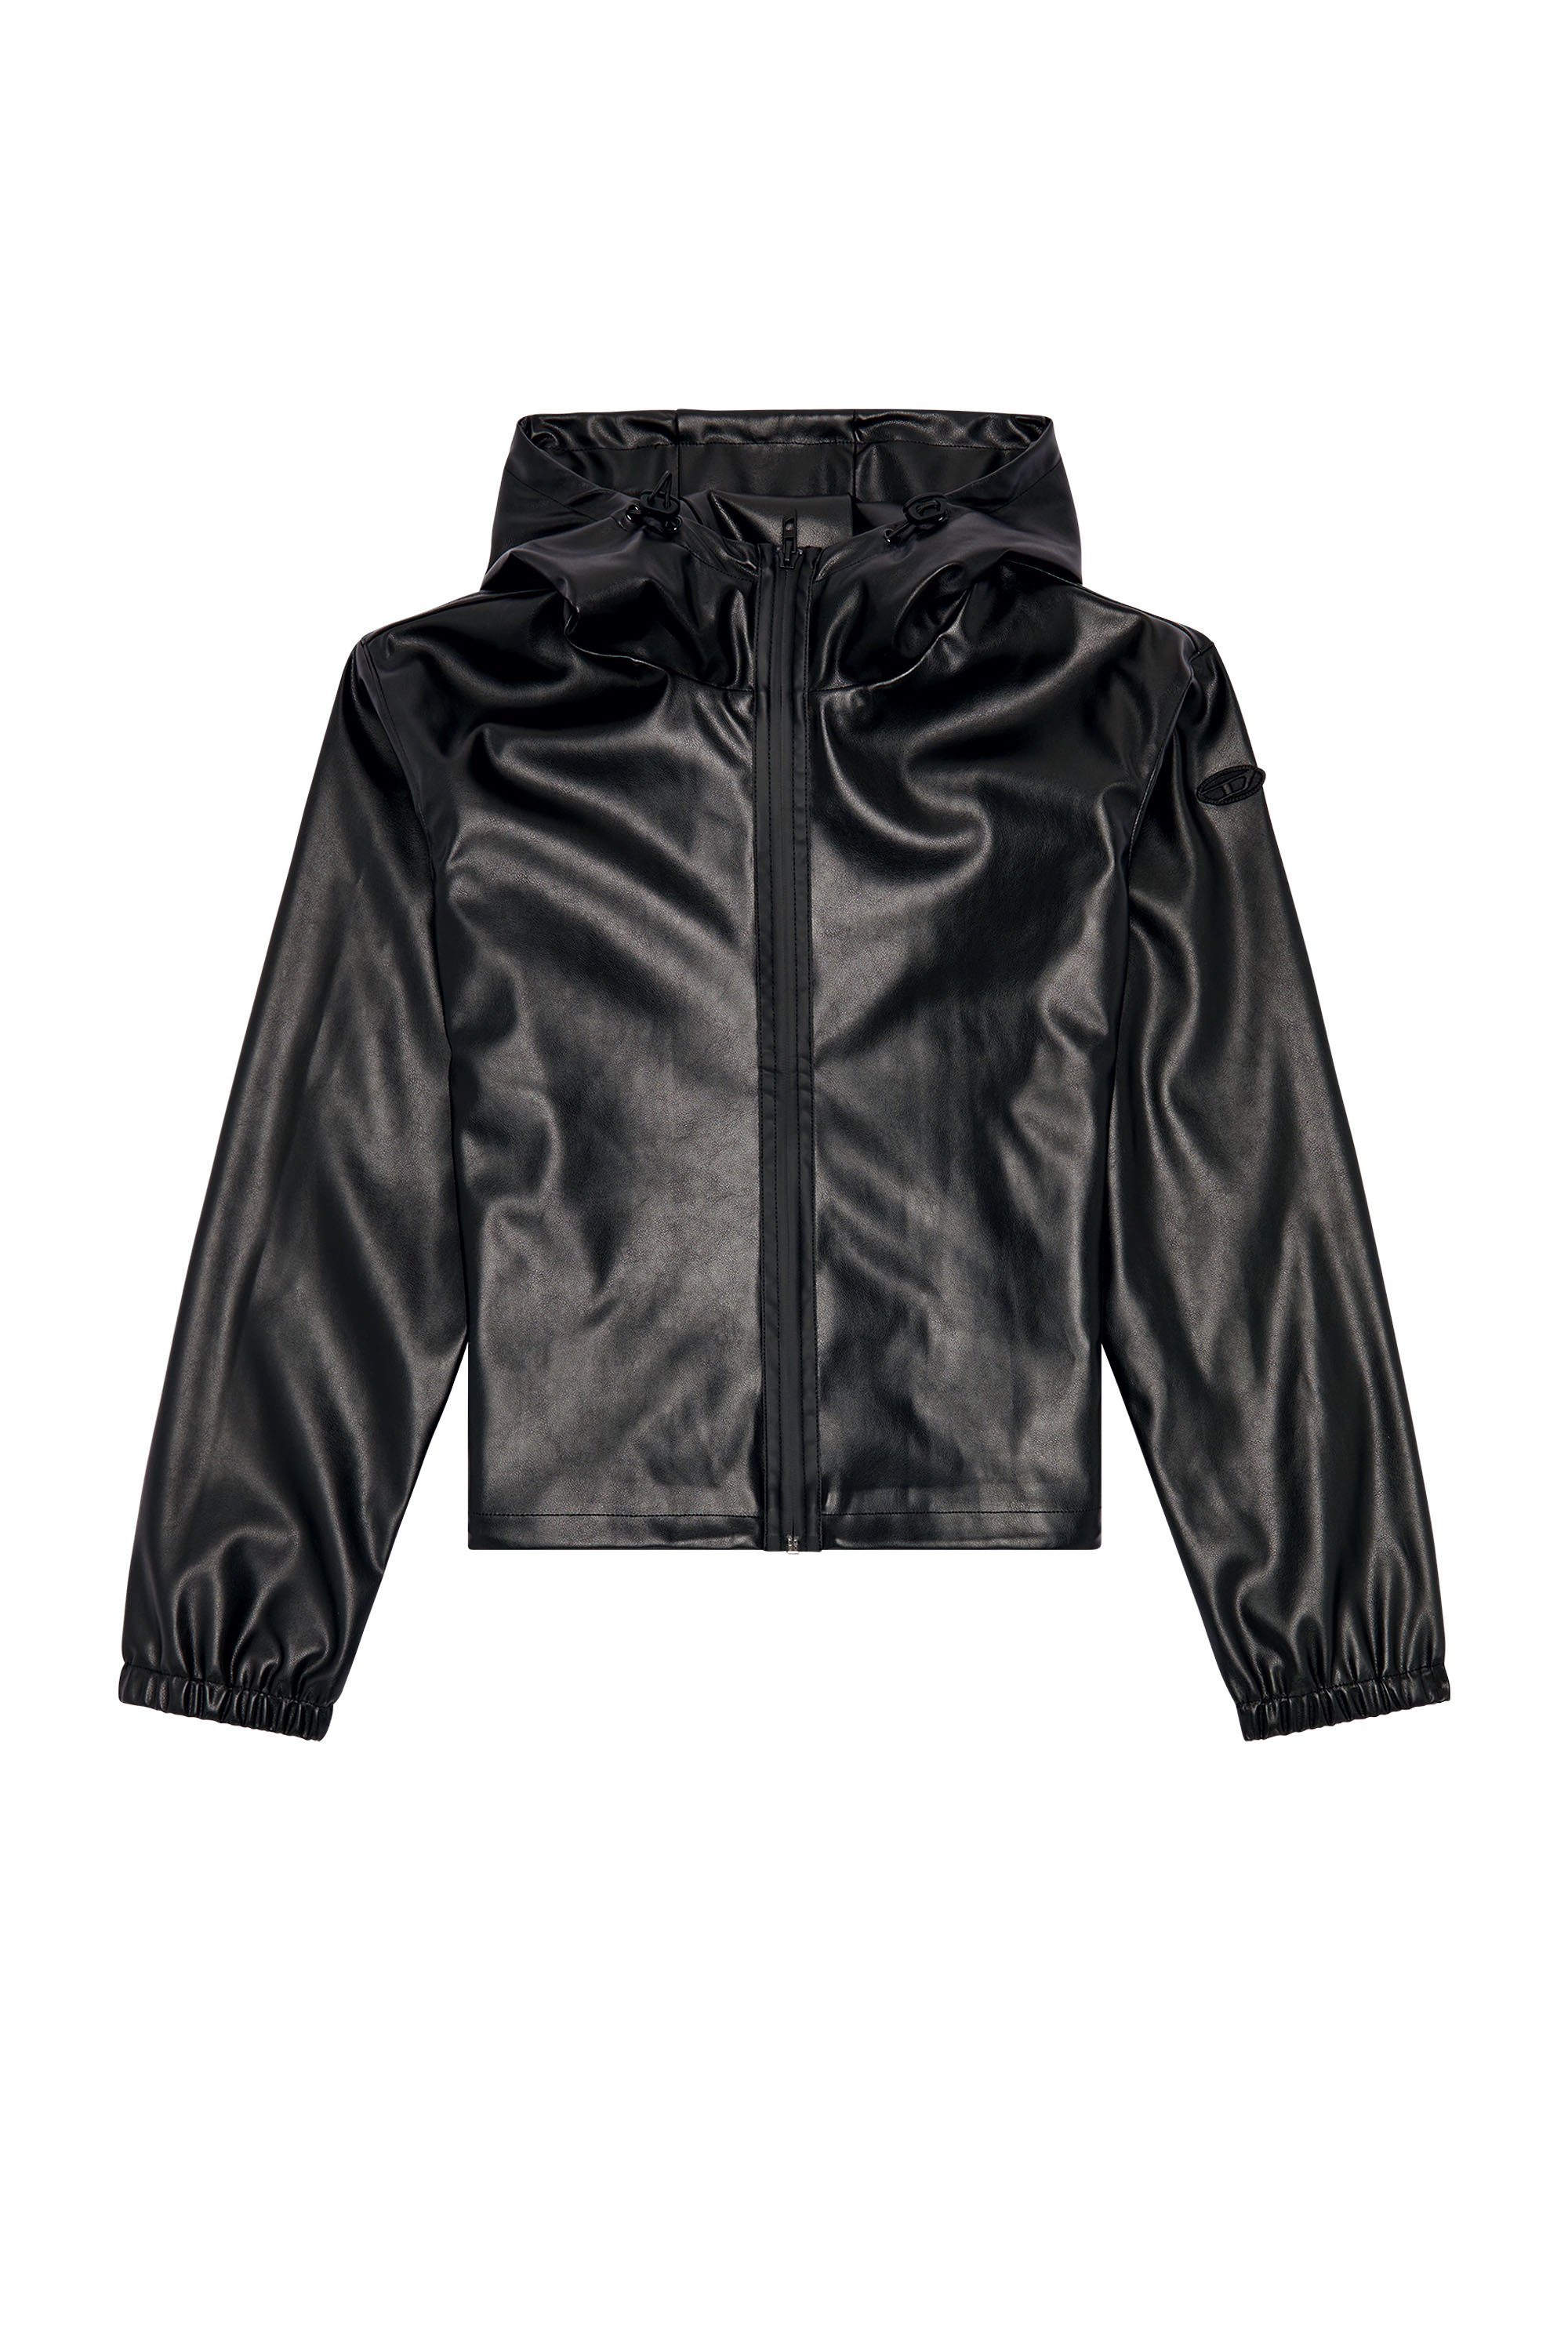 Diesel - G-BONNY-N1, Female Hooded jacket in coated fabric in Black - Image 5